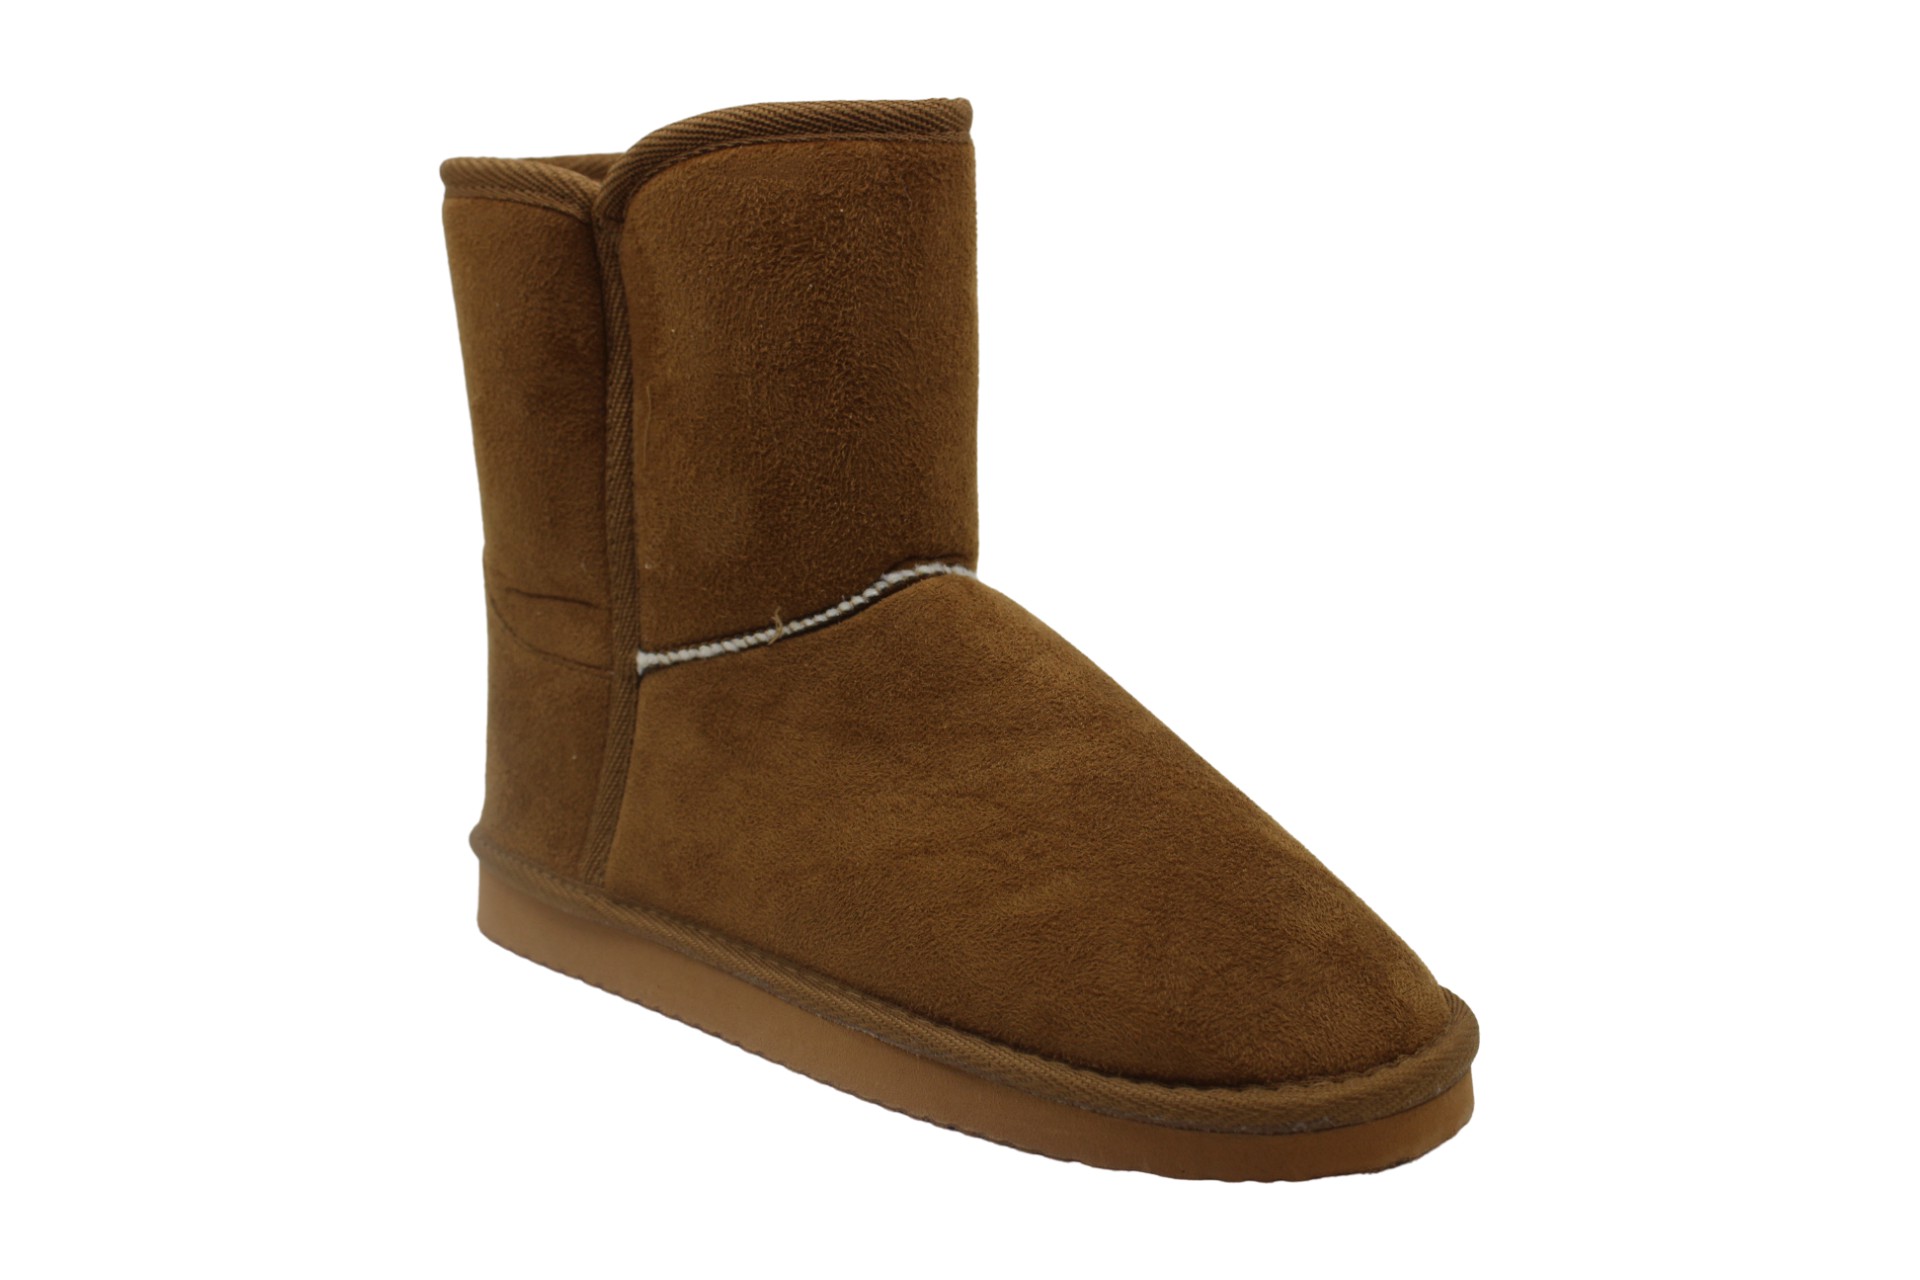 Mia Womens Boots in Tan Color, Size 6 SGA | eBay